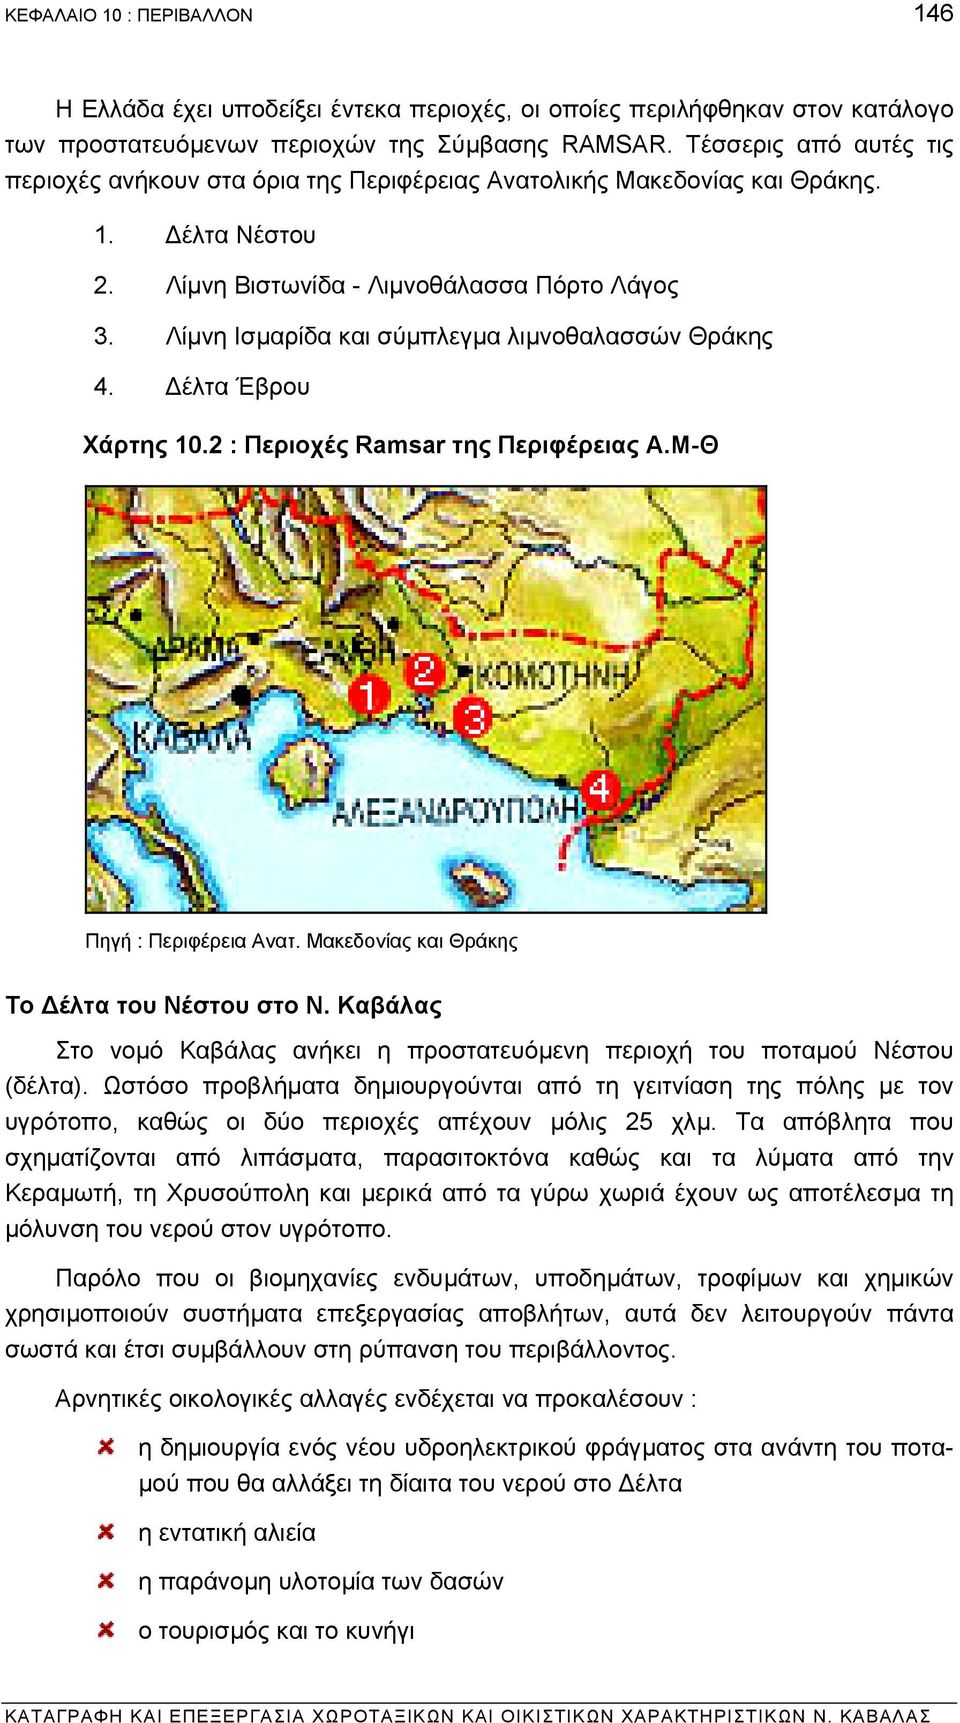 Λίµνη Ισµαρίδα και σύµπλεγµα λιµνοθαλασσών Θράκης 4. έλτα Έβρου Χάρτης 10.2 : Περιοχές Ramsar της Περιφέρειας Α.Μ-Θ Πηγή : Περιφέρεια Ανατ. Μακεδονίας και Θράκης Το έλτα του Νέστου στο Ν.